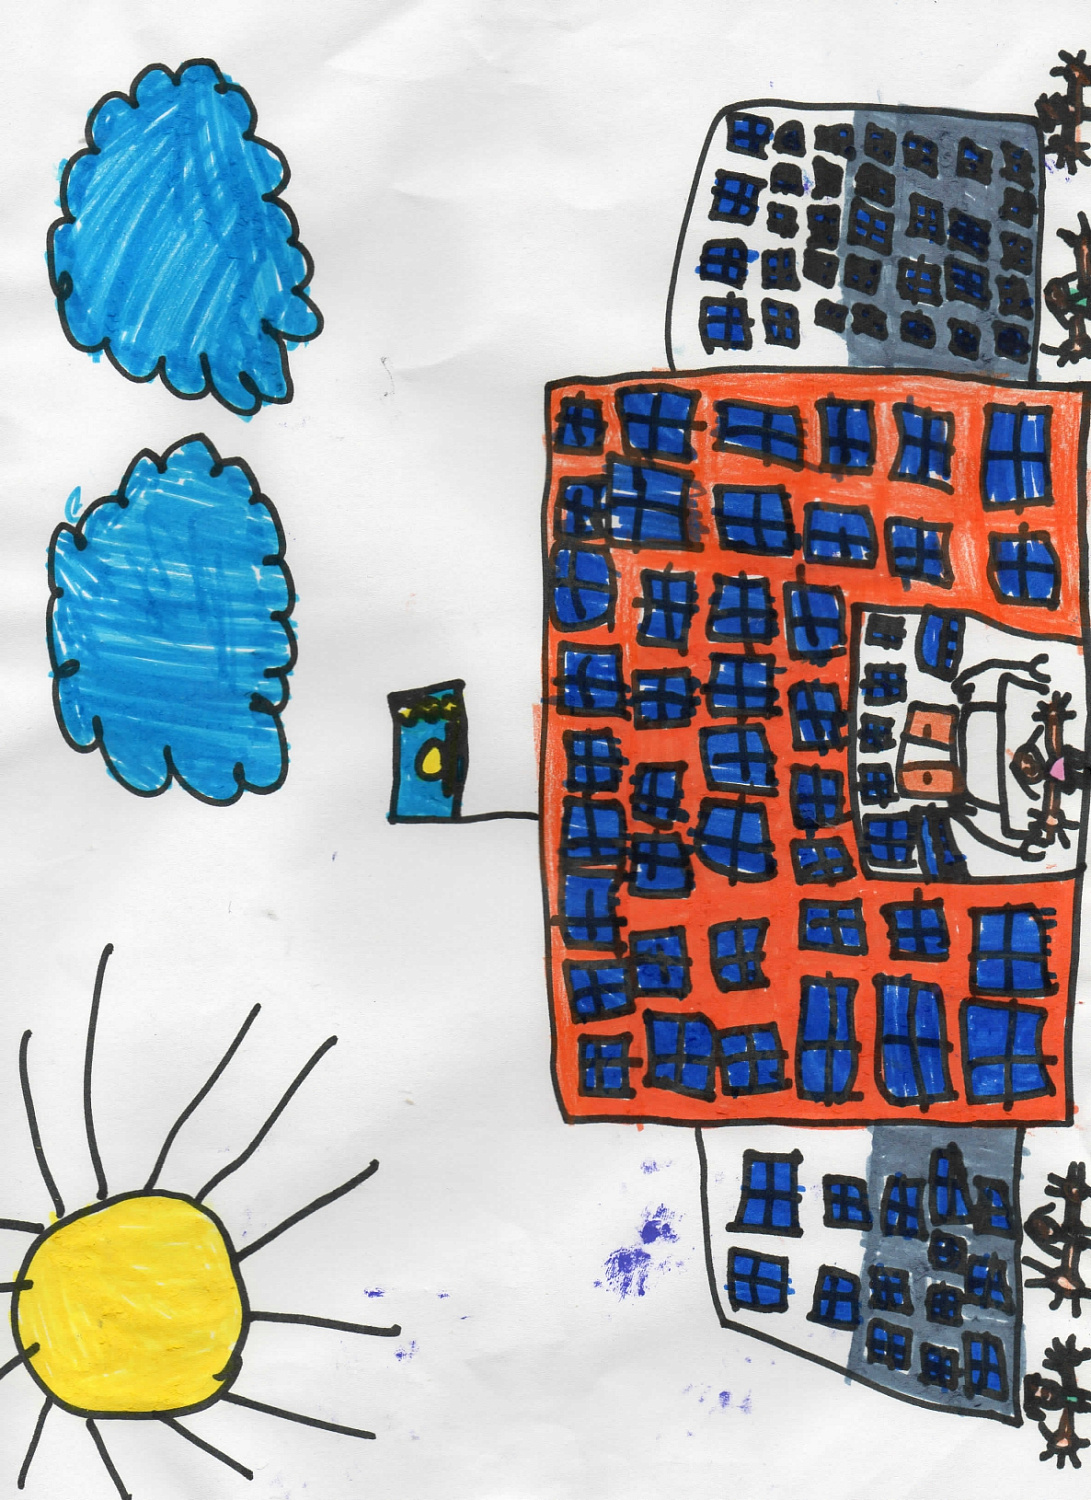 В ТОО "Самрук-Қазына Контракт" прошел конкурс детских рисунков среди детей сотрудников компании